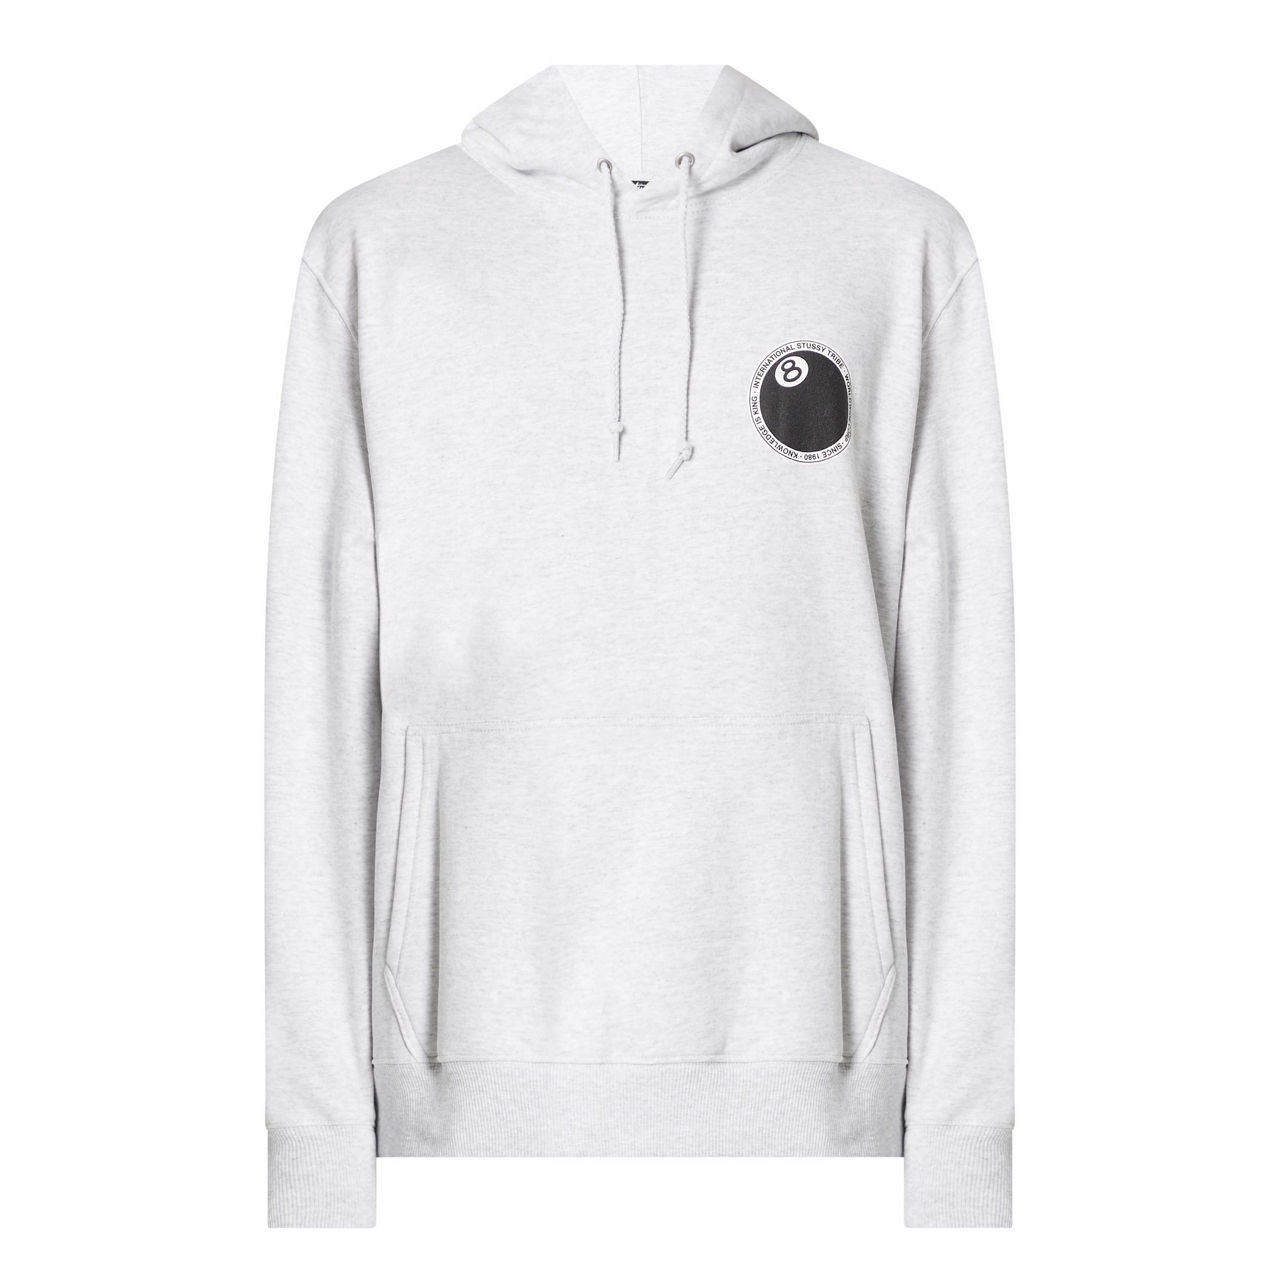 8 Ball Hoodie  stussy hoodie on sale